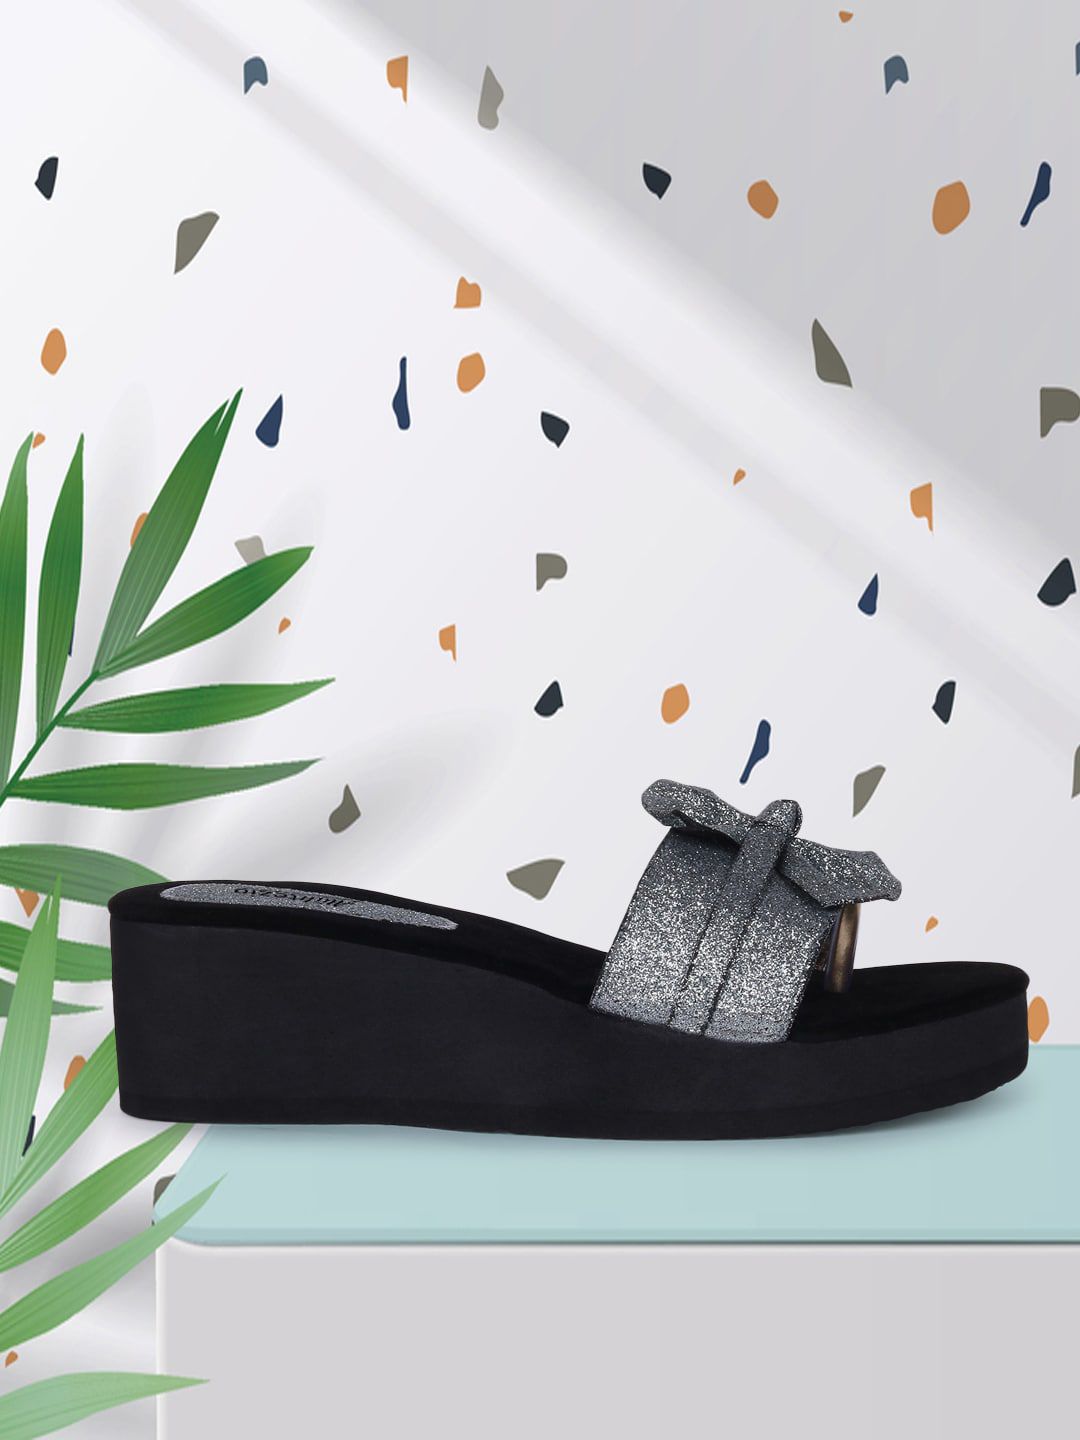 Alishtezia Grey & Black Embellished PU Flatform Sandals with Bows Price in India